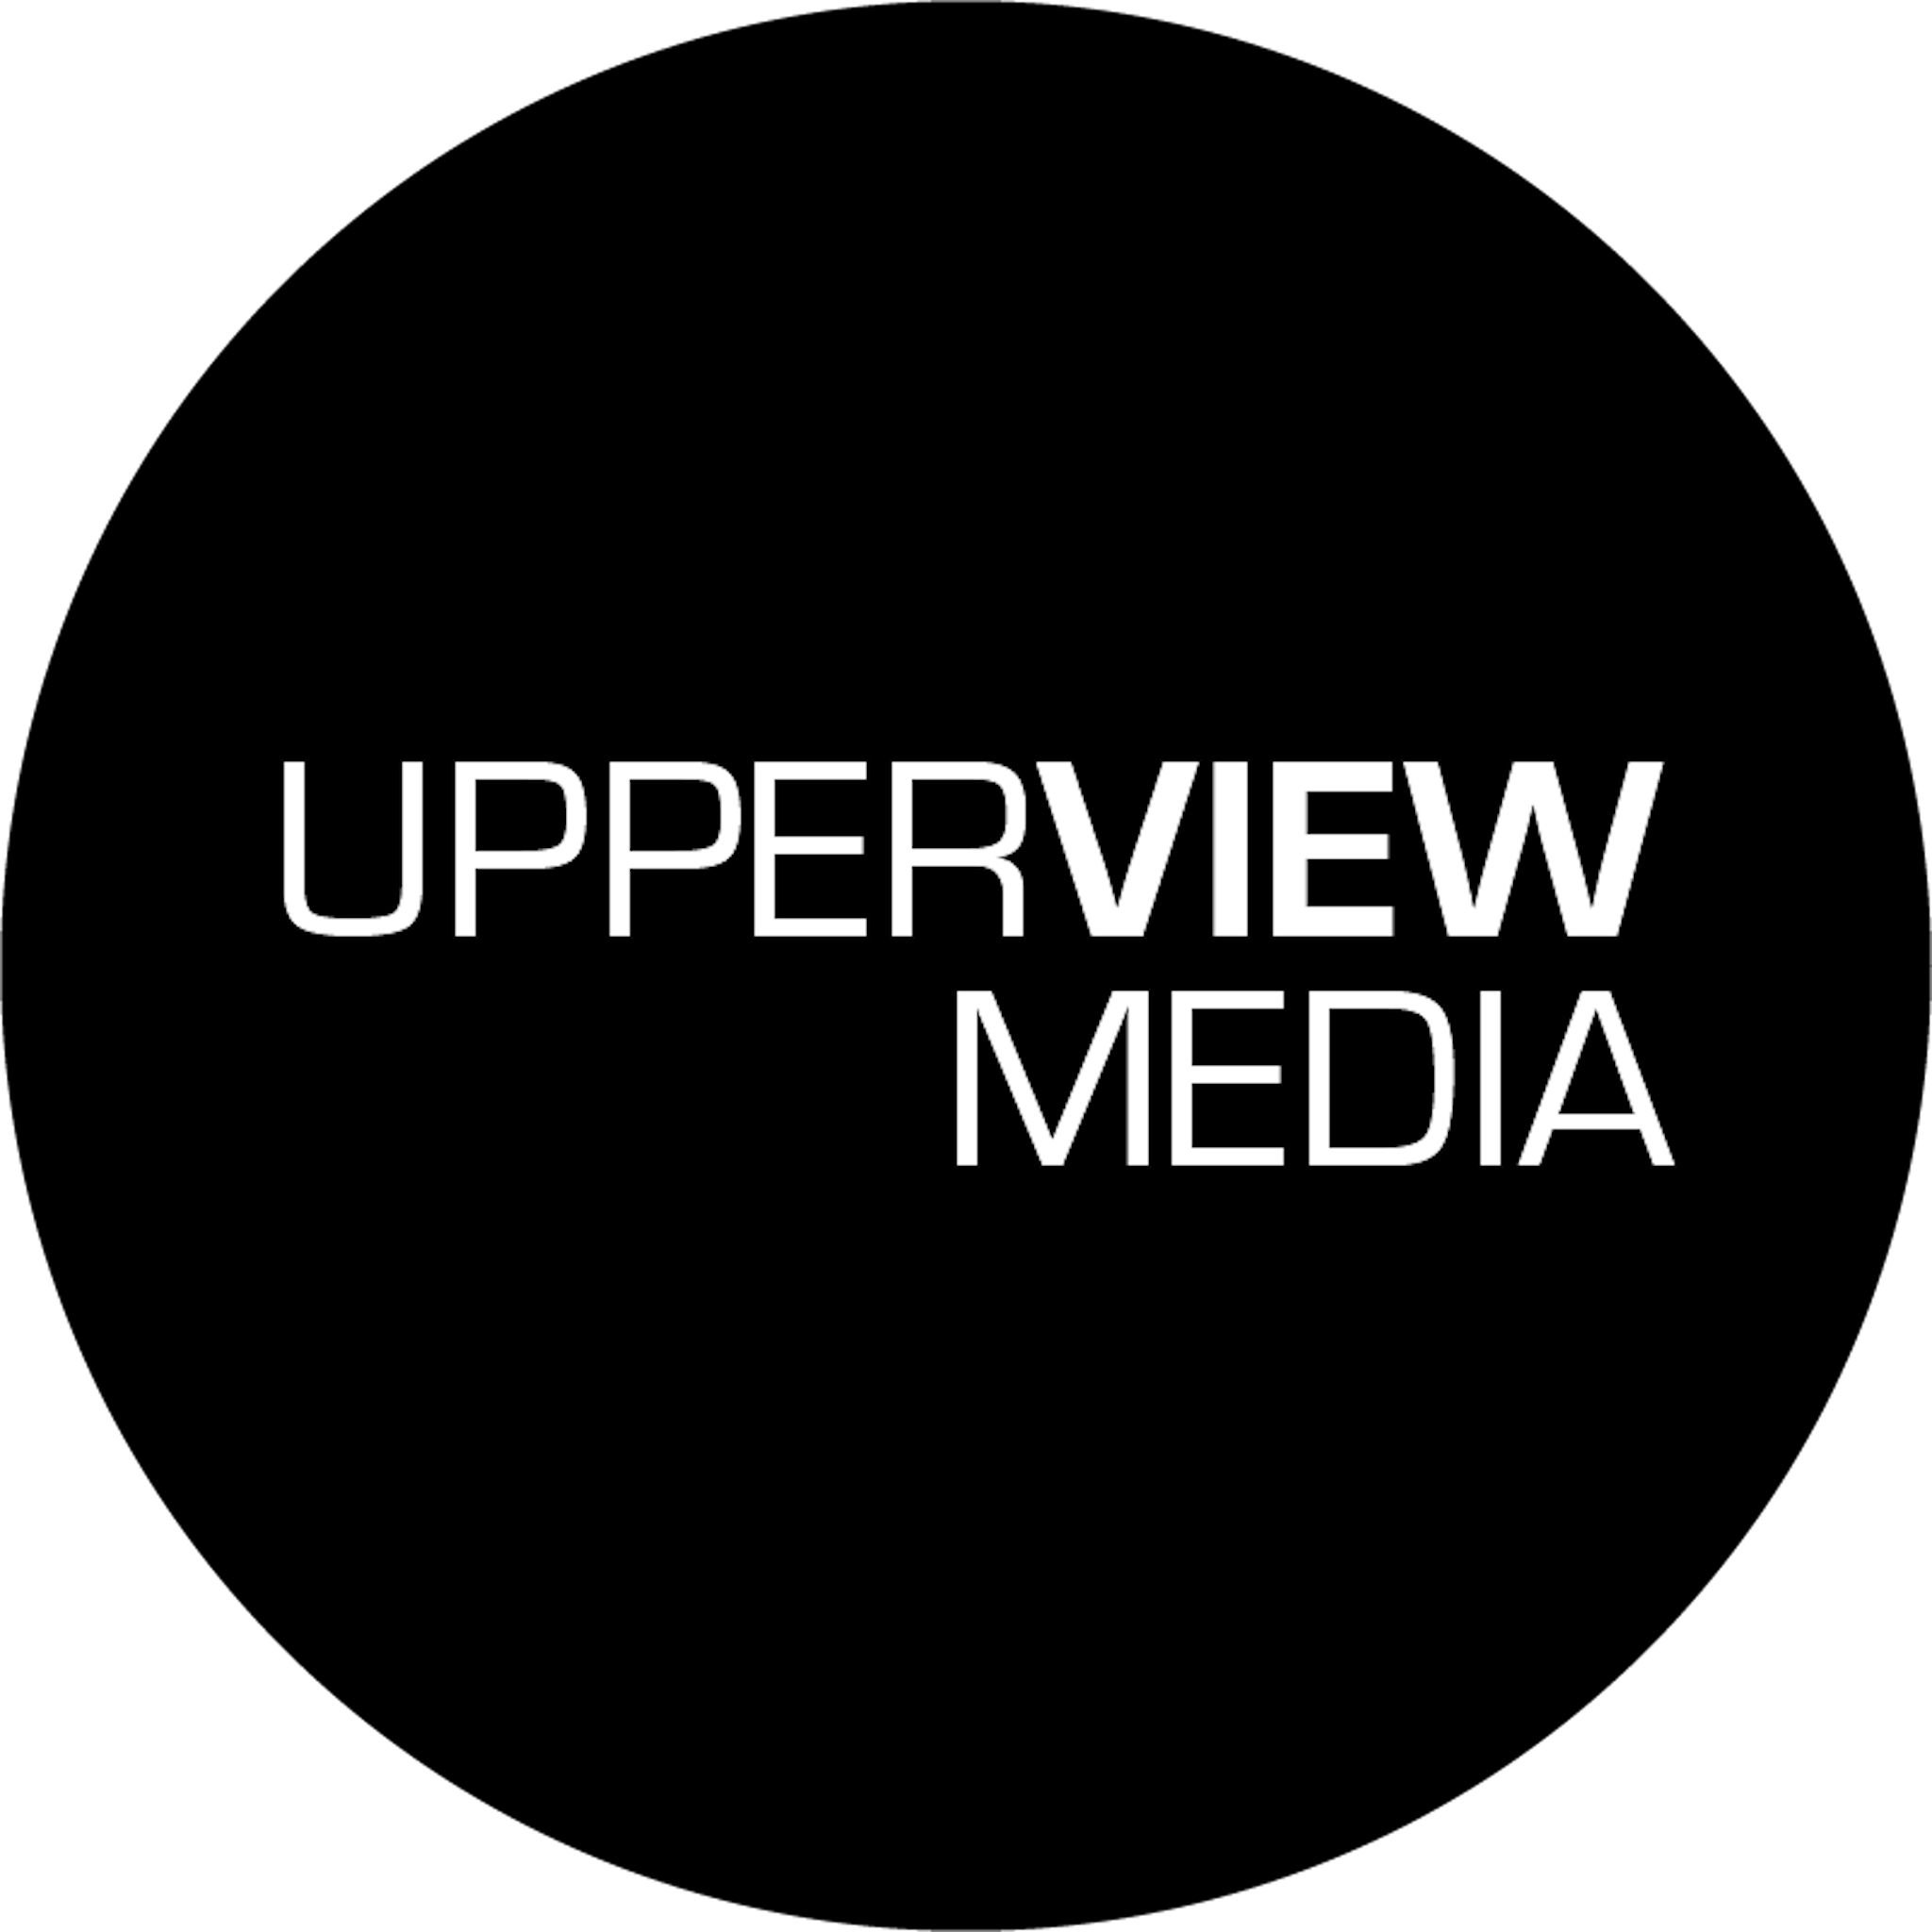 Upperview Media LLC